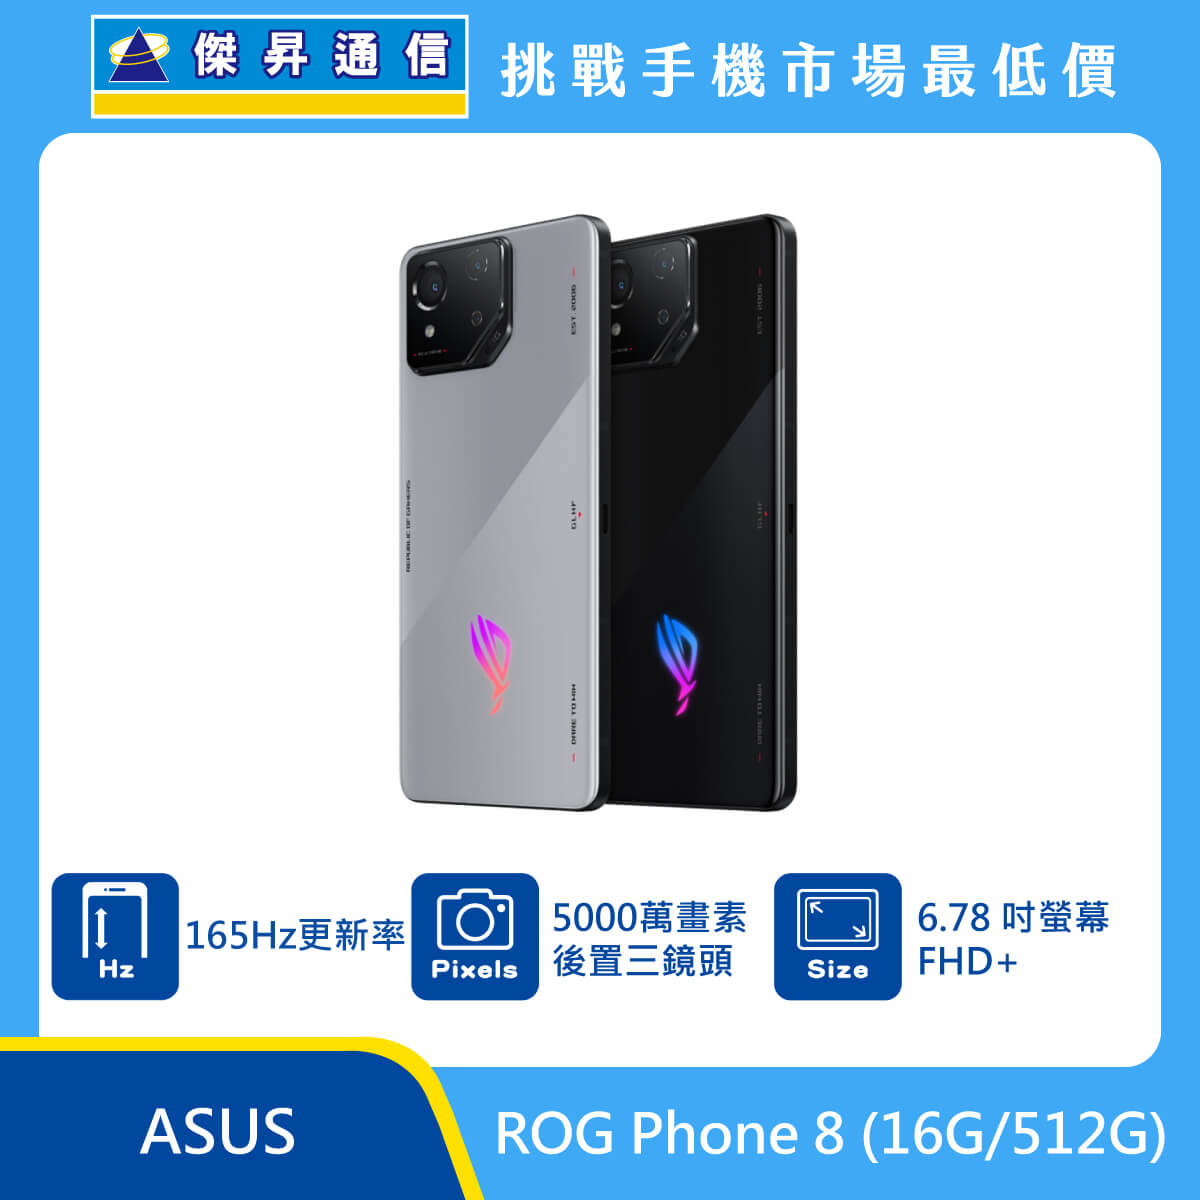 ASUS ROG Phone 8 (16G/512G)